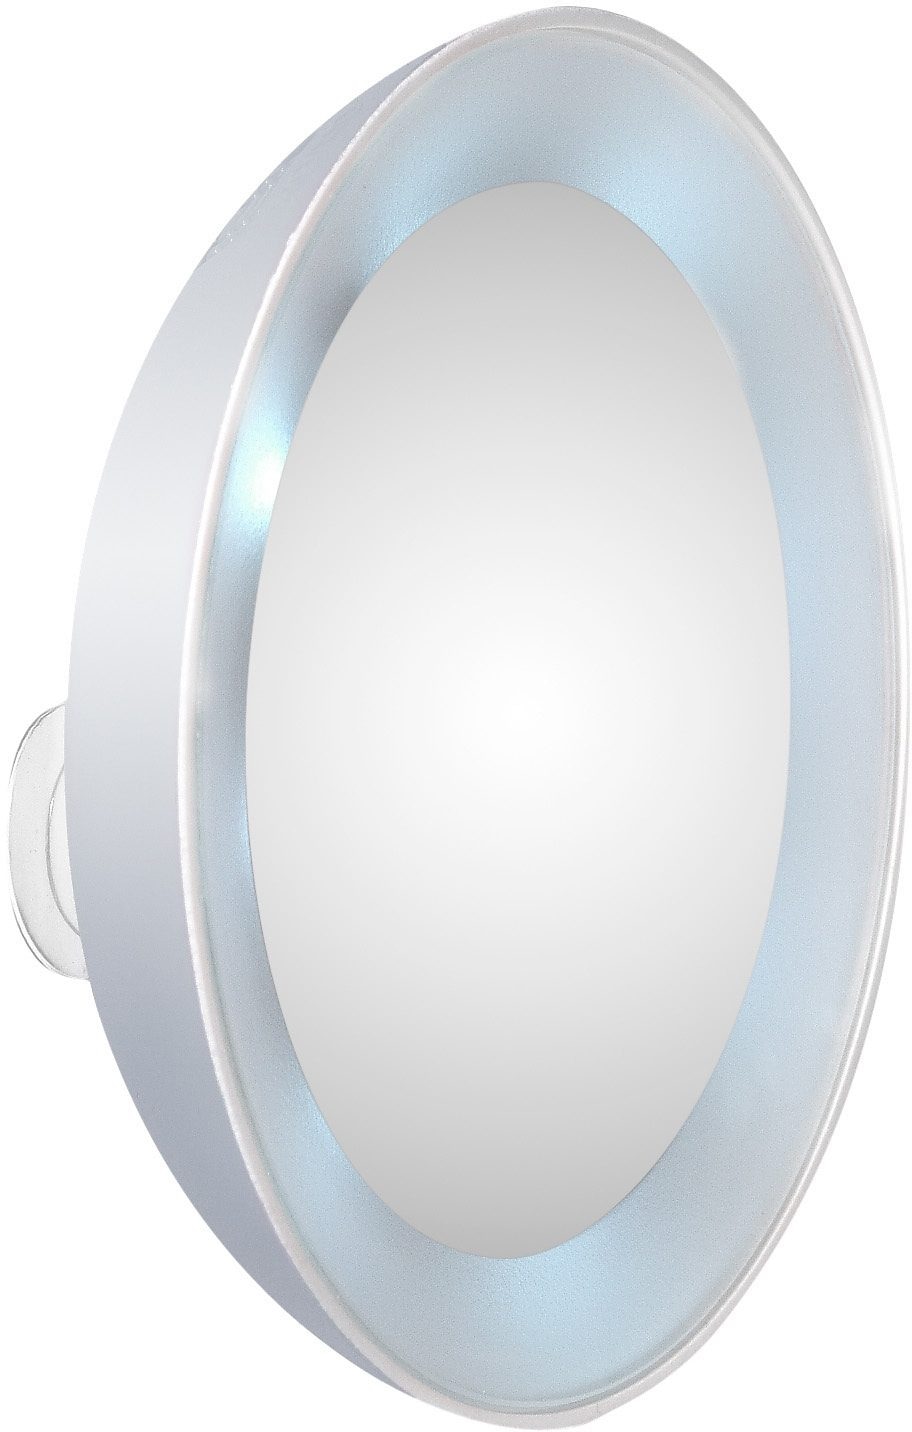 Kosmetikspiegel, 15-fach Vergrößerung mit LED-Beleuchtung, Schminkspiegel